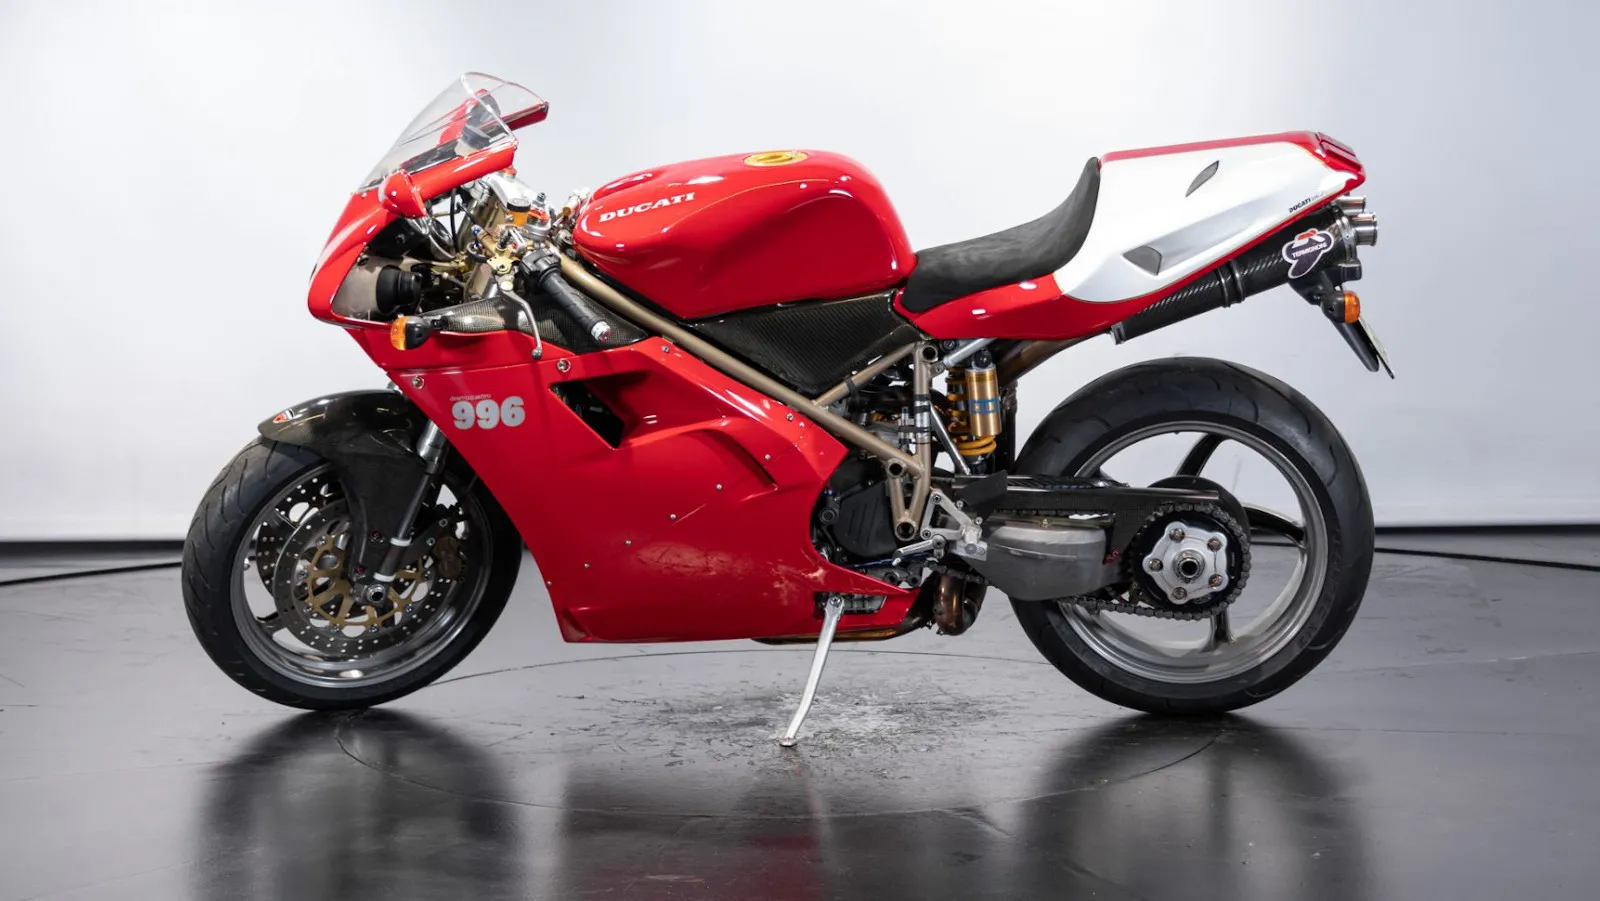 Moto del día: Ducati 996